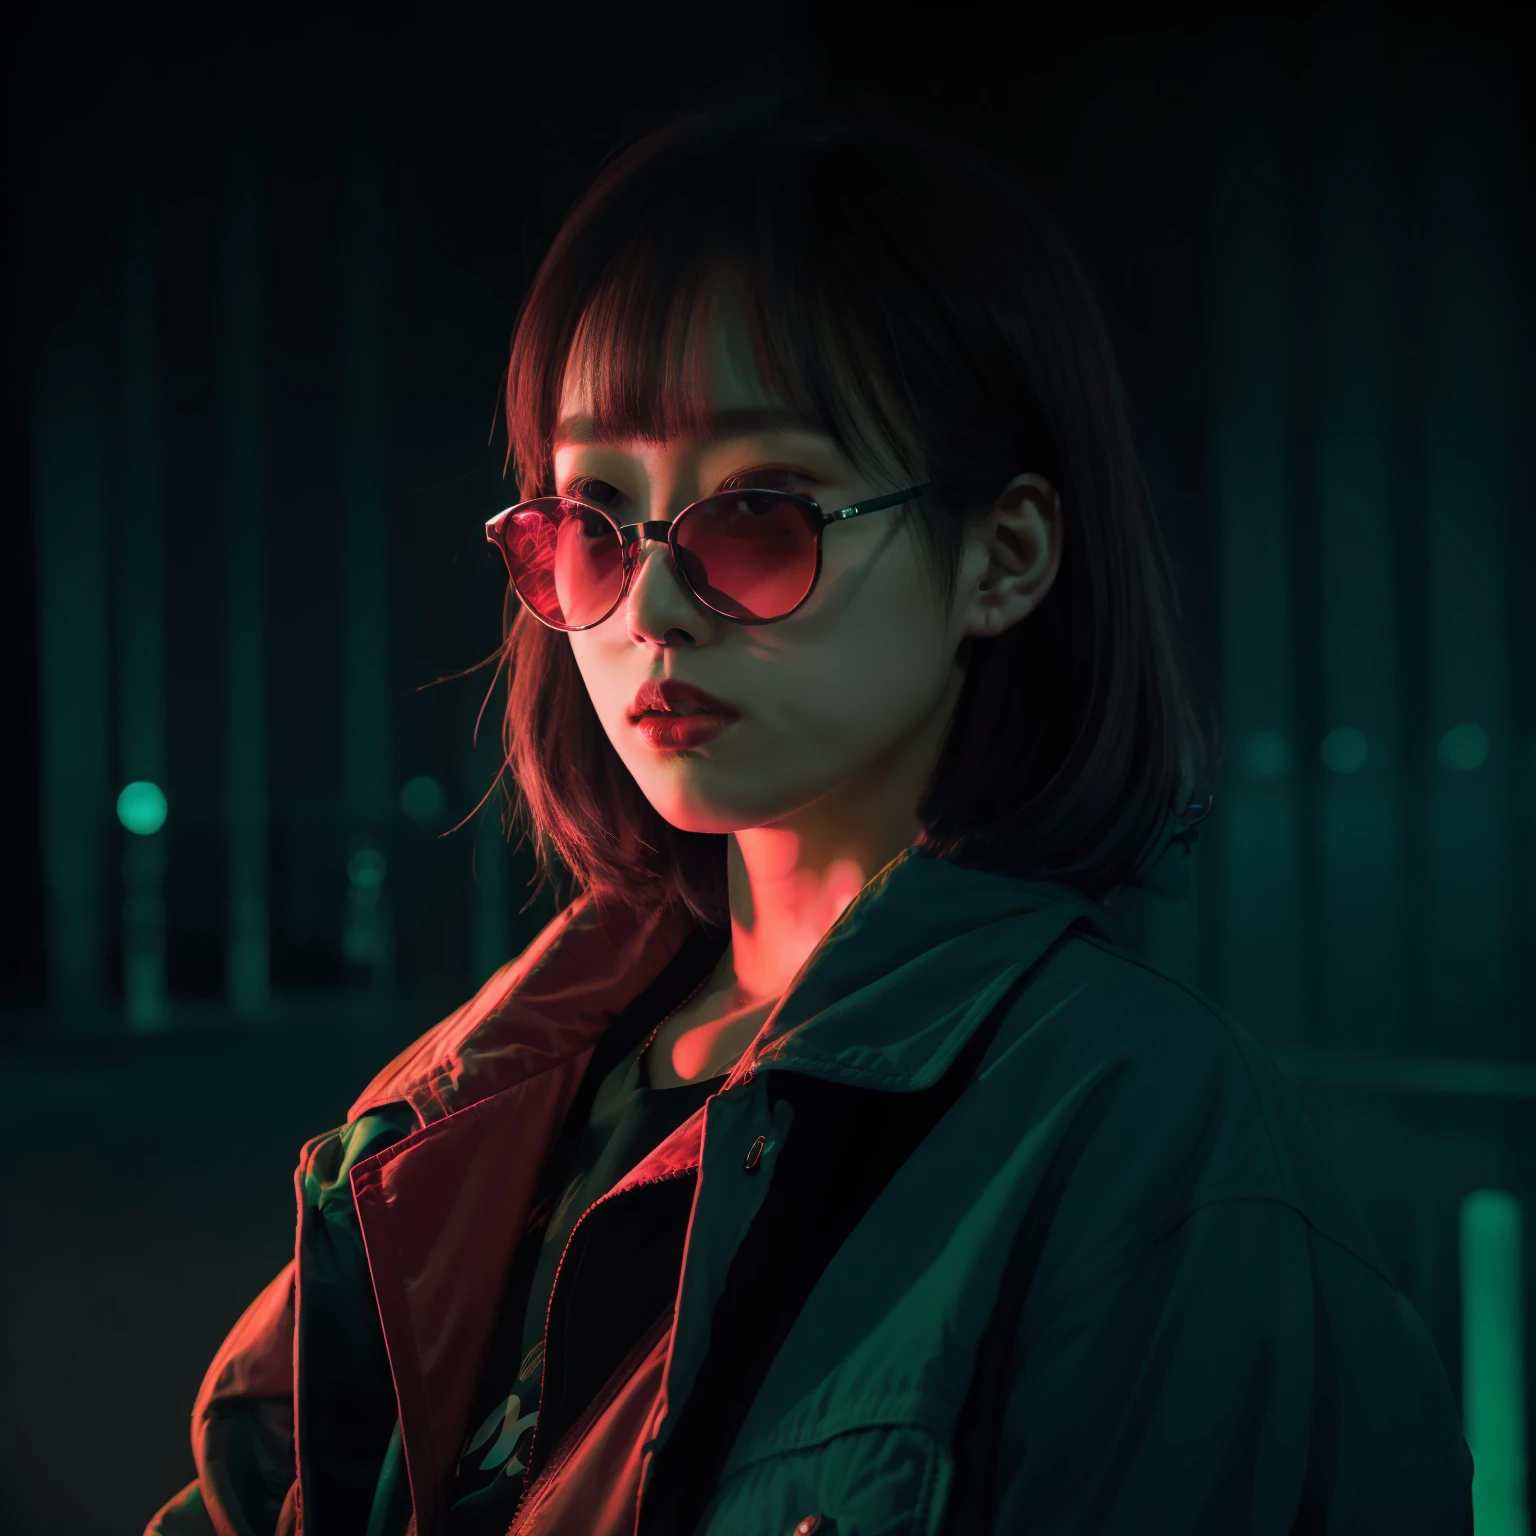 DSLR 사진, 빨간 재킷을 입은 일본 여성, 색안경, 네온블랙, 네온, 부드러운 조명, 현실적인, 녹색 조명, 단단한 그림자, 걸작, 최고의 품질, 뒤얽힌, 높은 디테일, 8K, 모델 촬영 스타일, 필름 그레인,